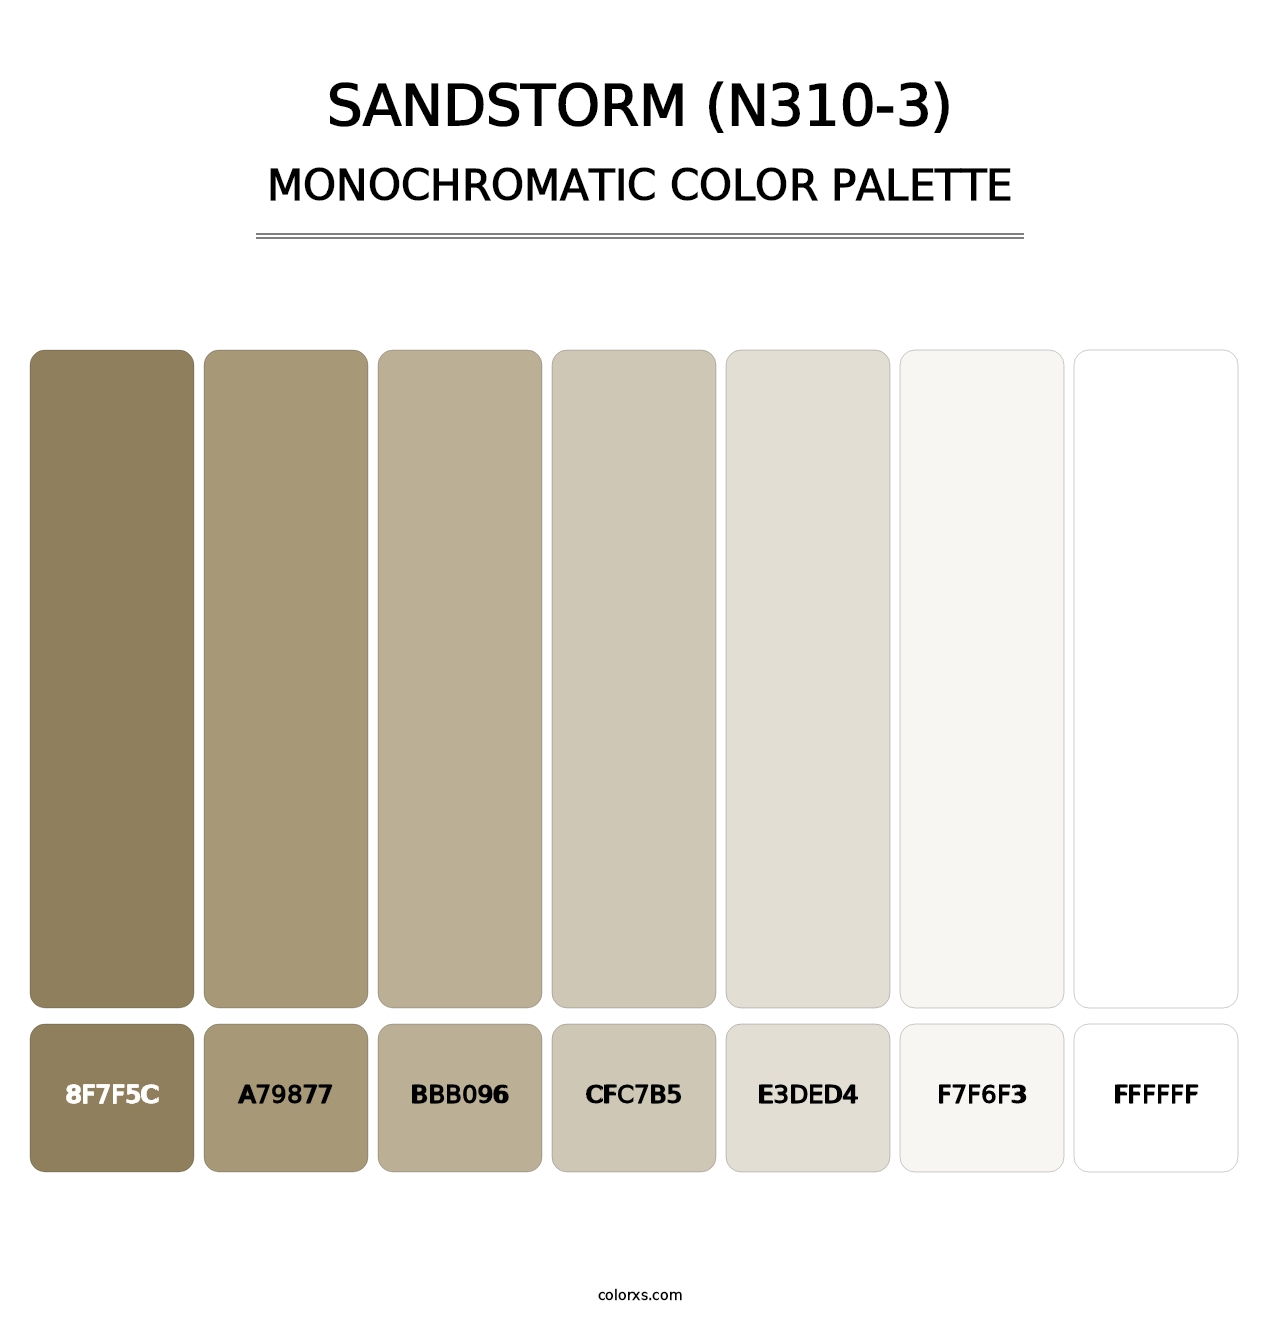 Sandstorm (N310-3) - Monochromatic Color Palette